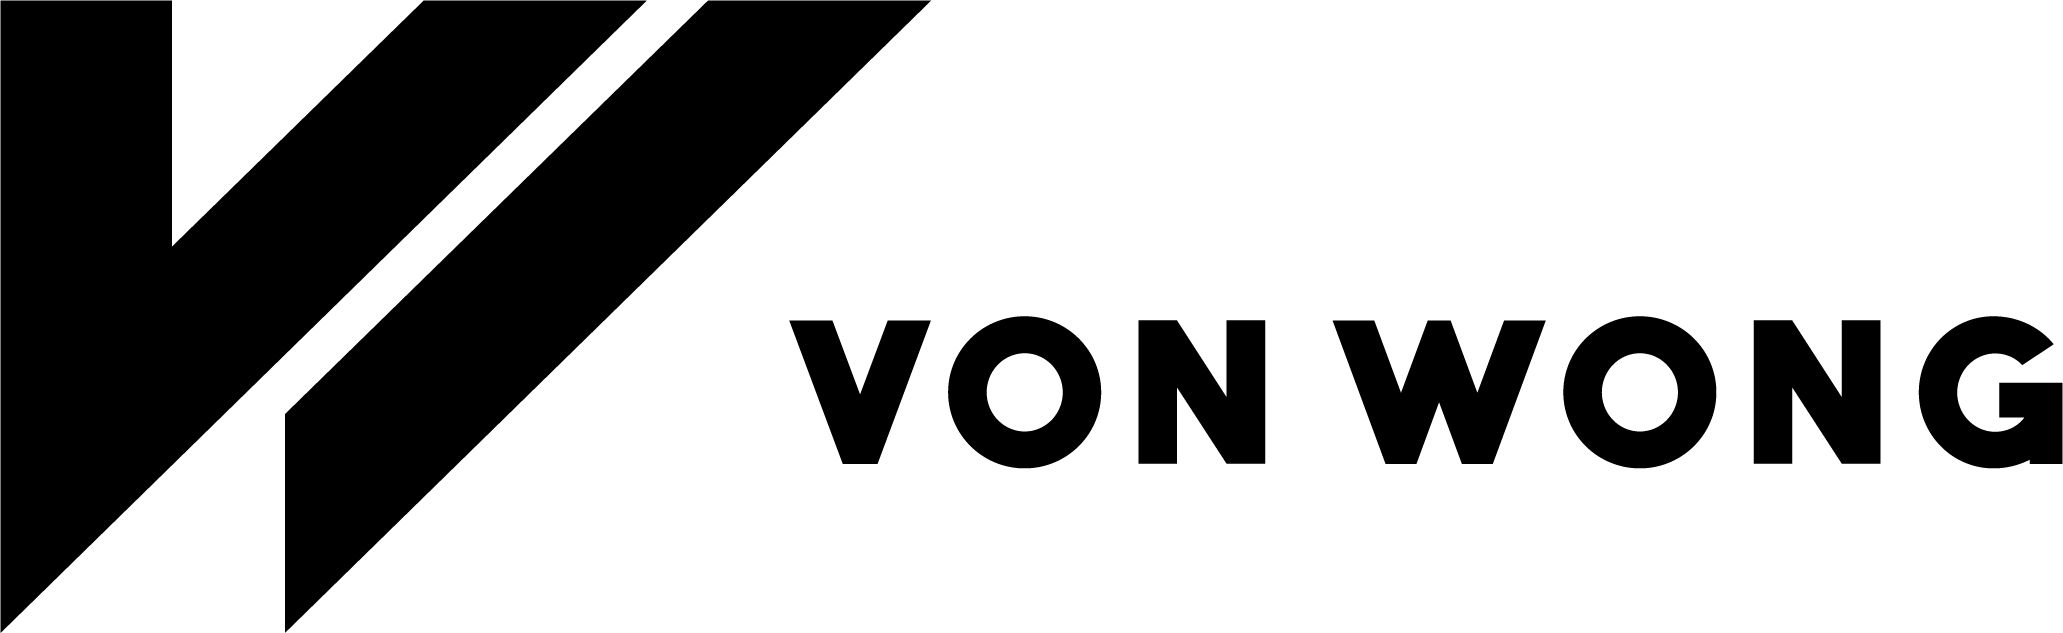 Von Logo - Von Wong